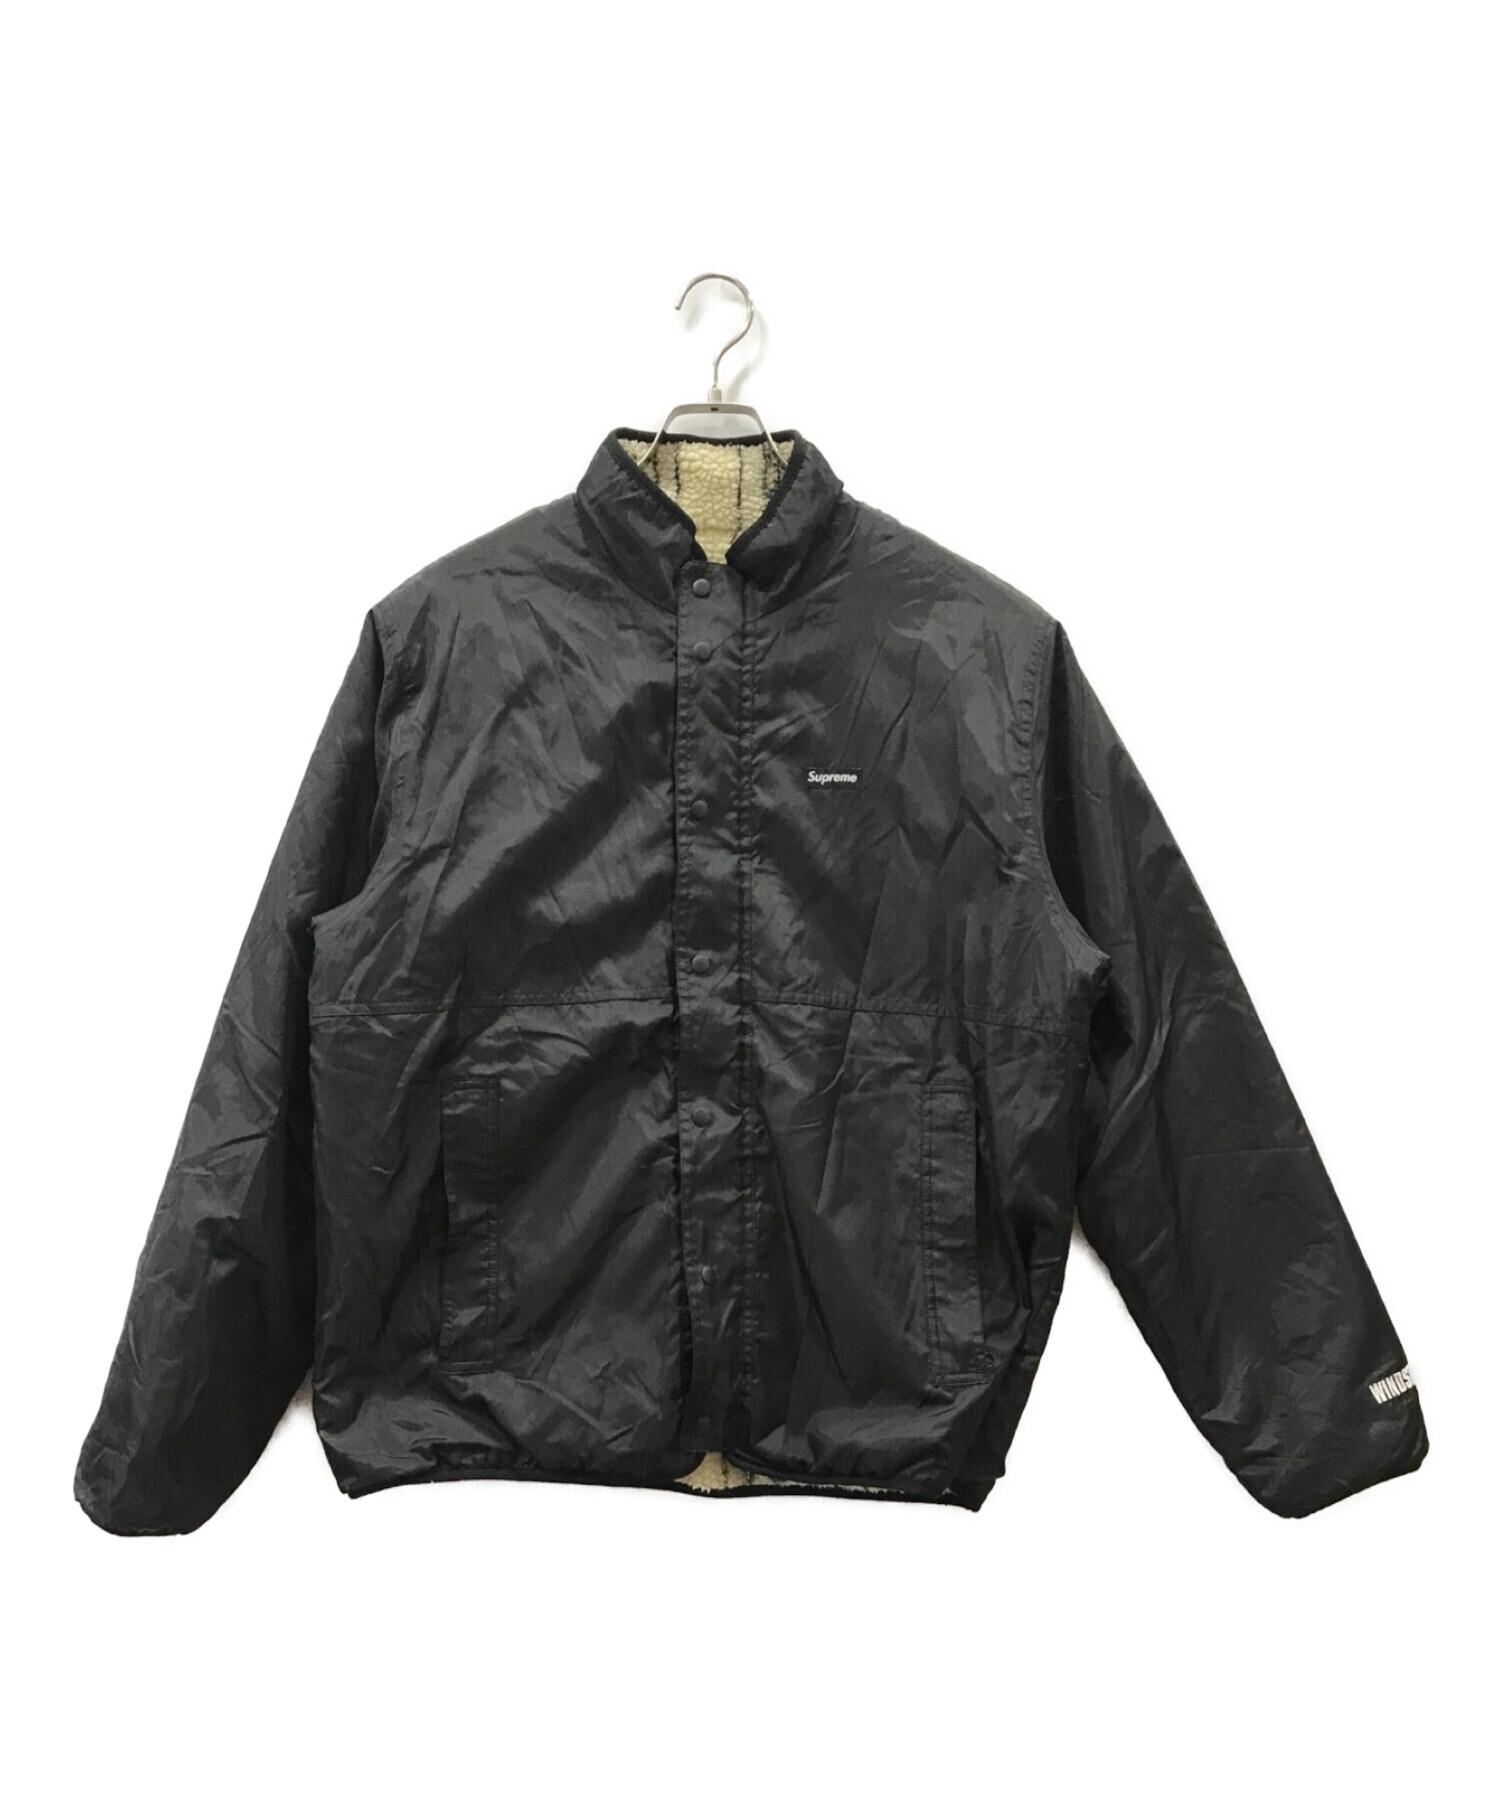 メンズsupreme reversible fleece jacket Lサイズ